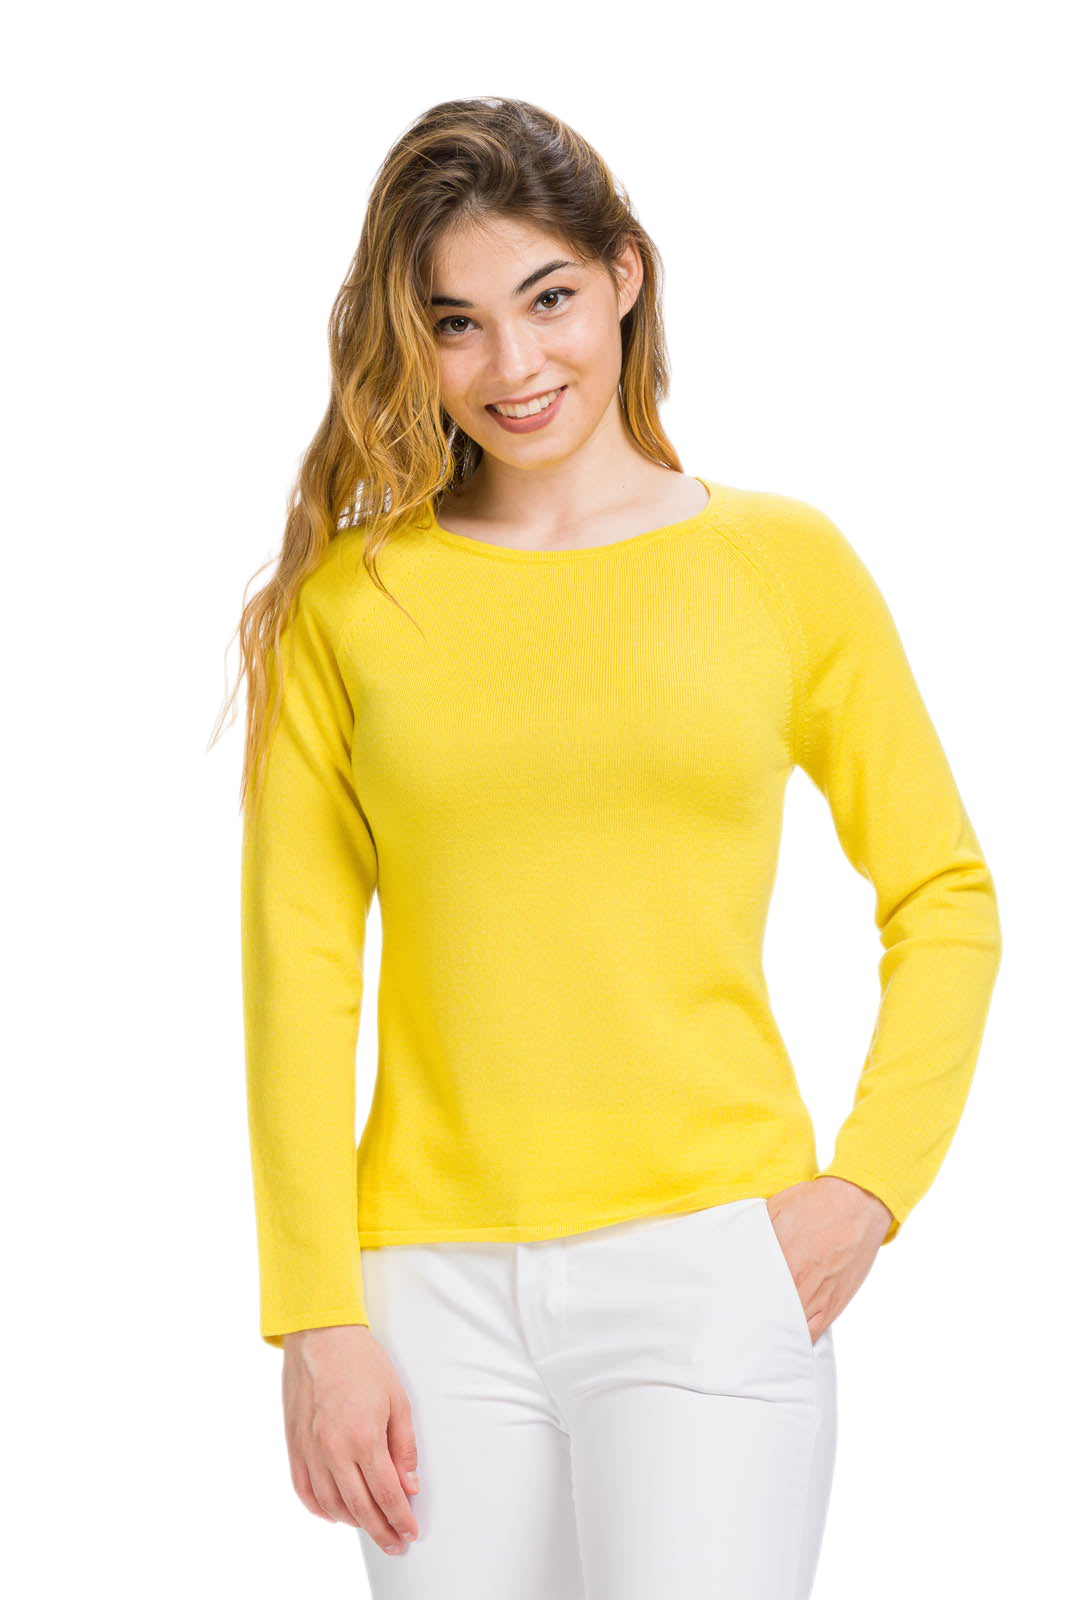 Maglia donna in lana gialla